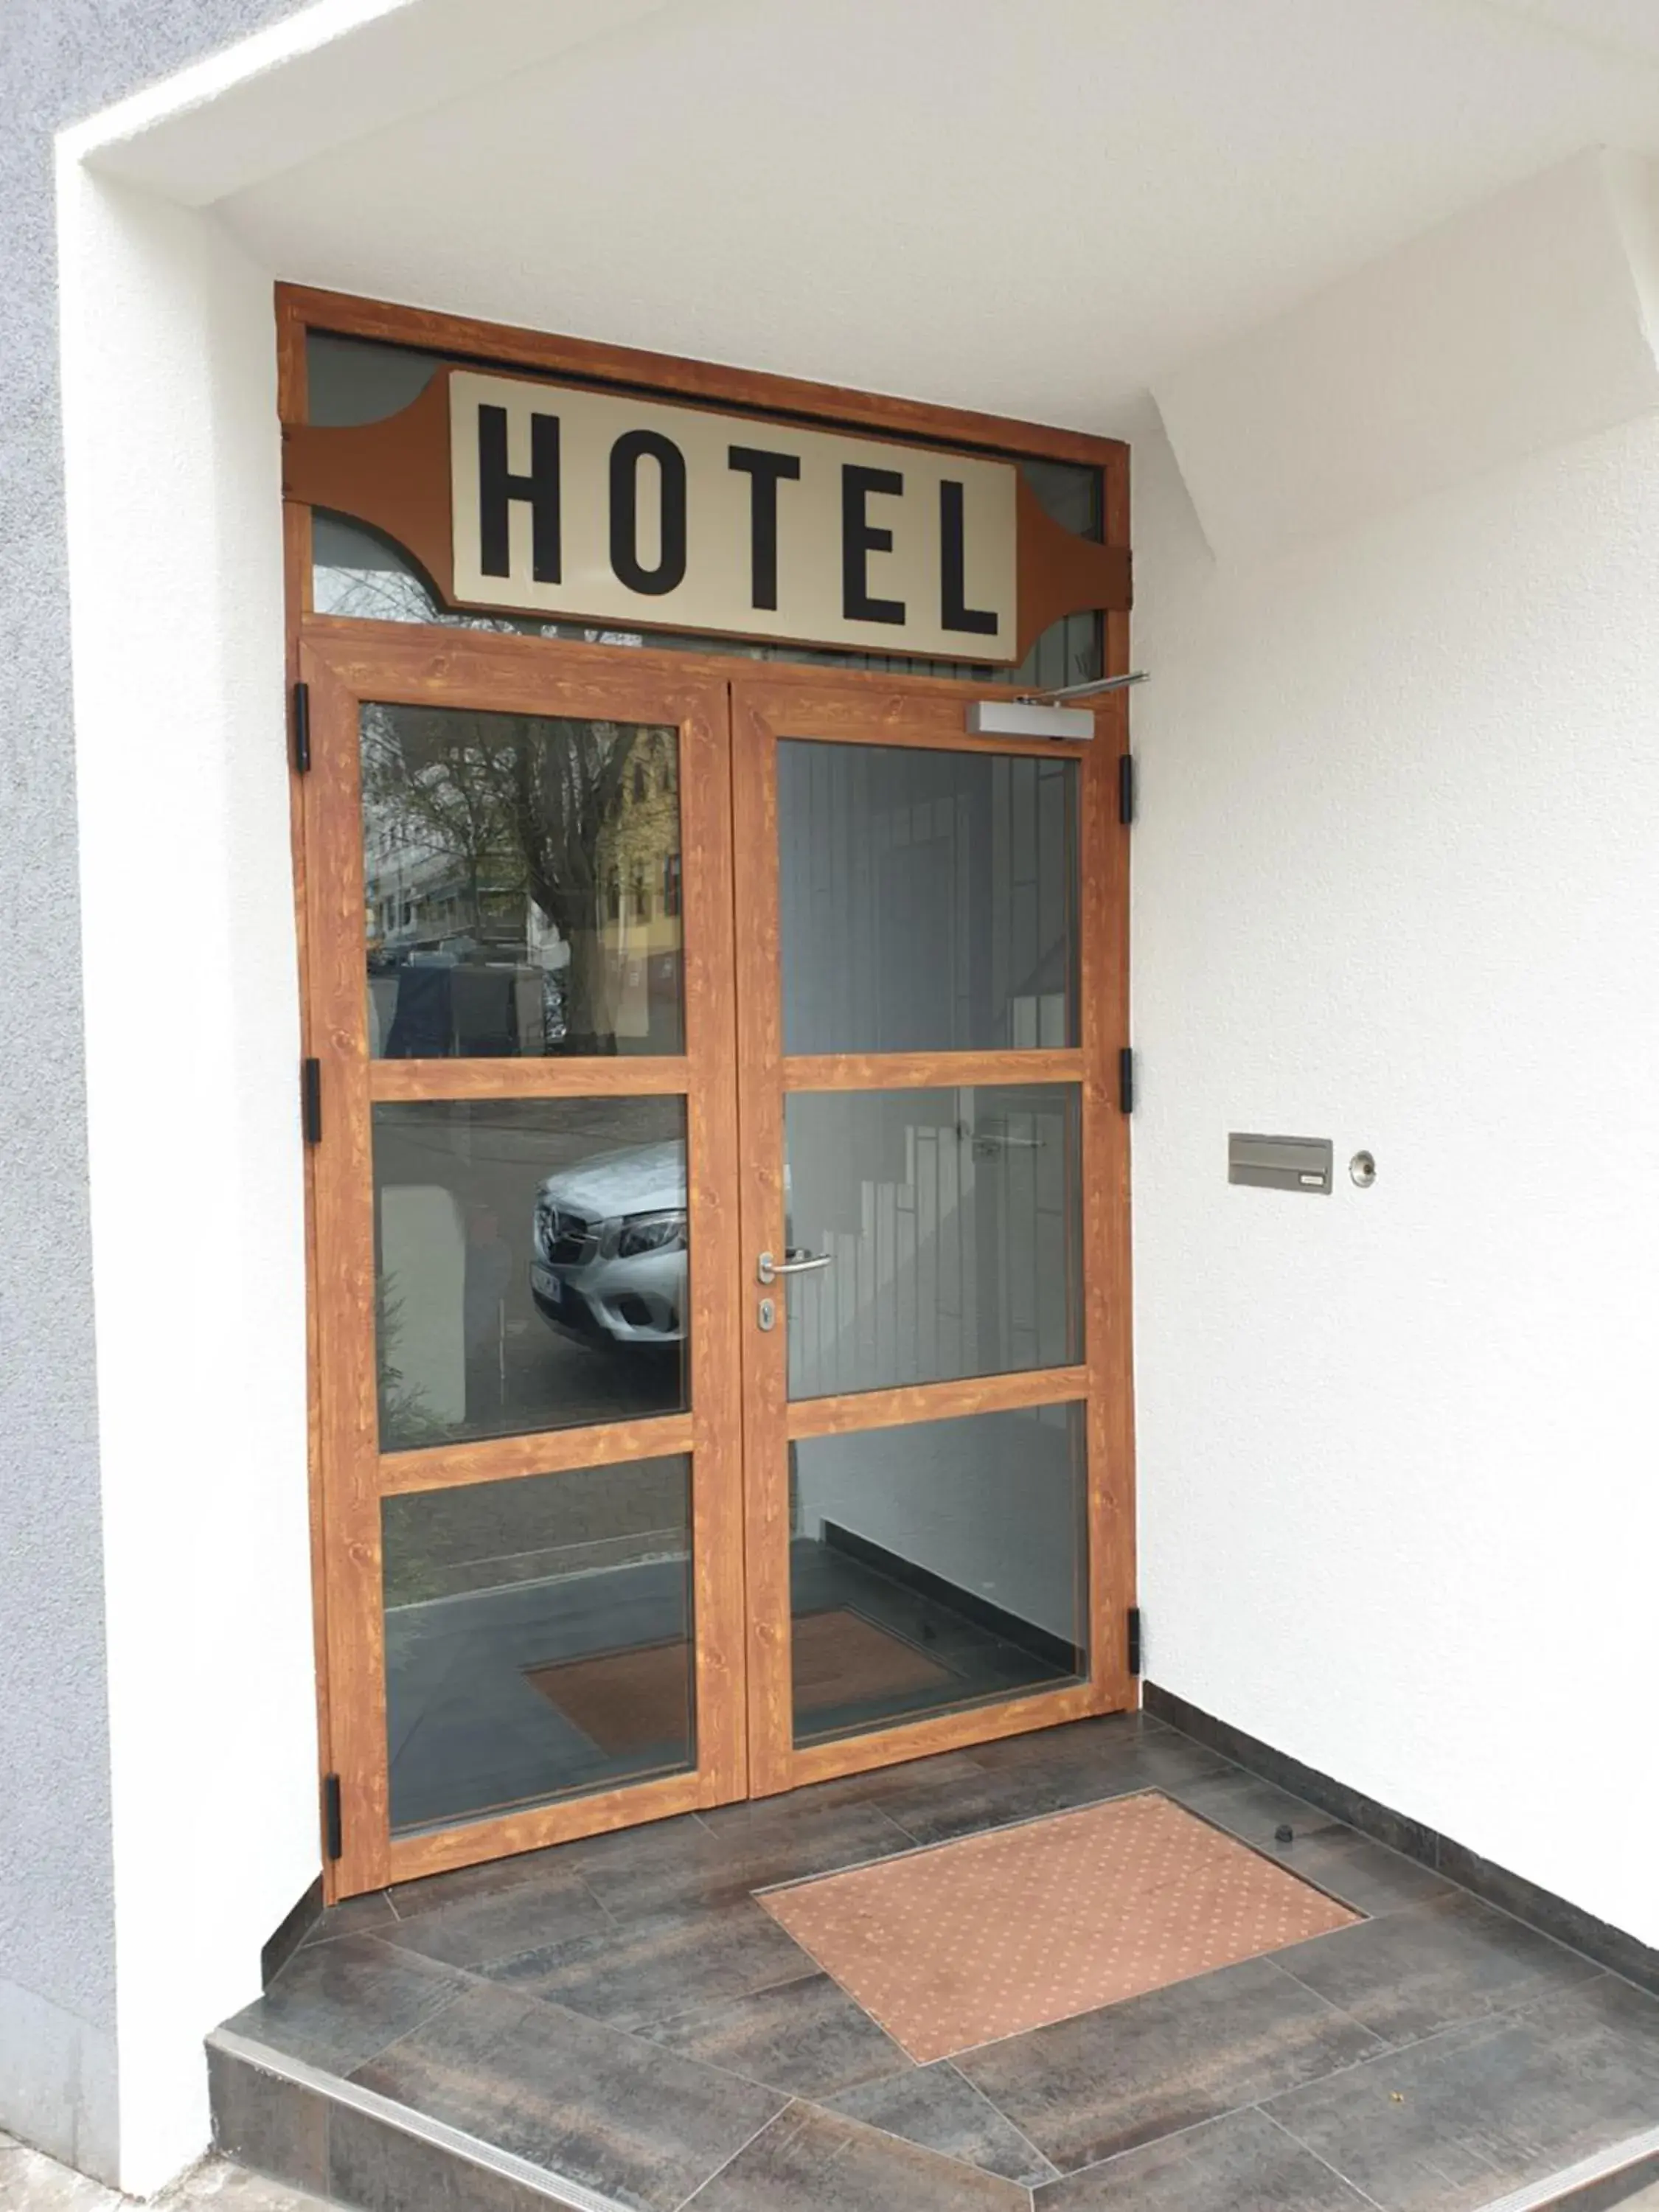 Kirchberg Hotel garni